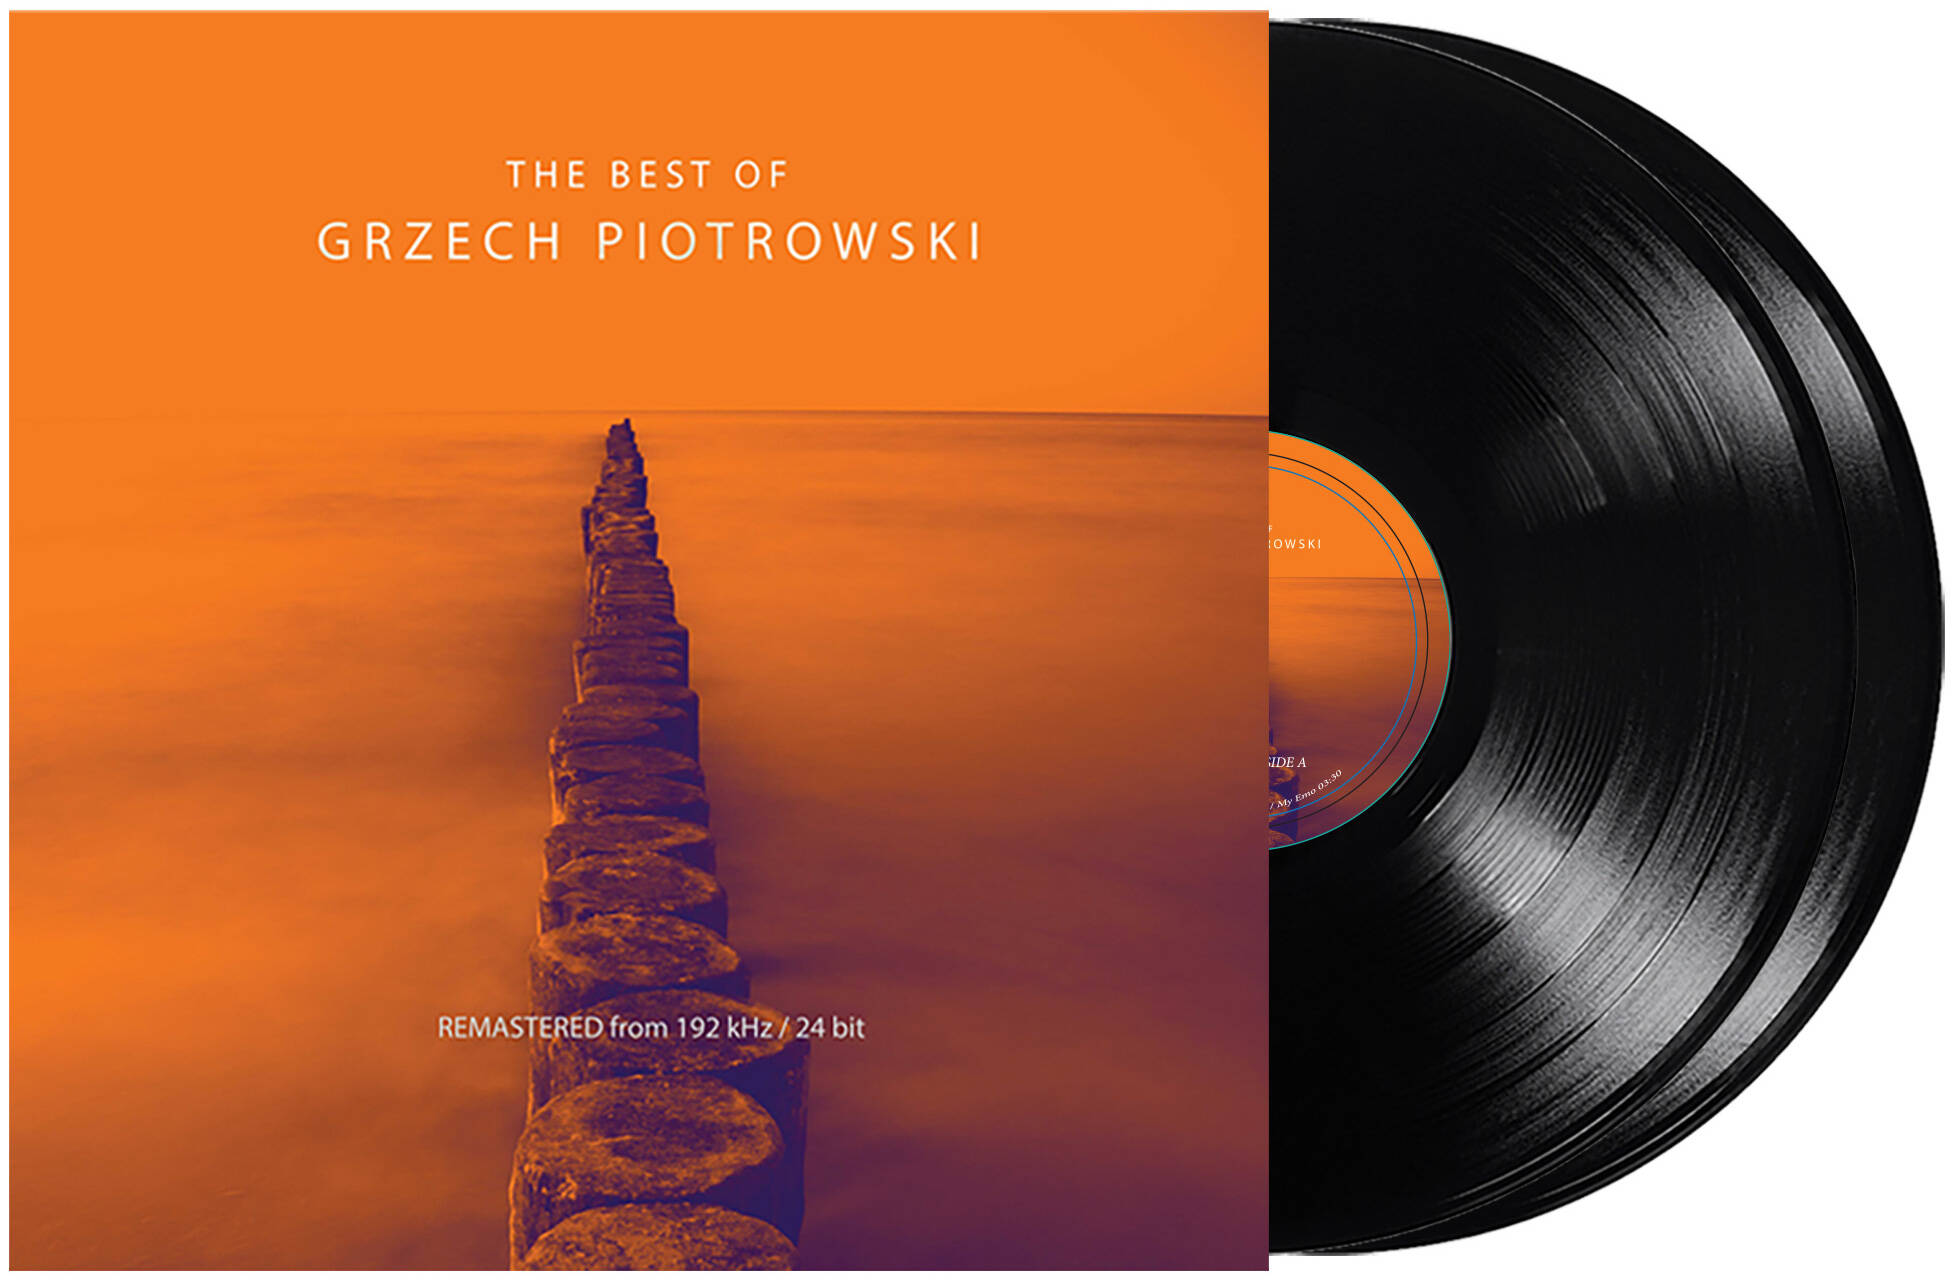 Grzech Piotrowski - The Best Of - audiofilska płyta winylowa 2LP 180G